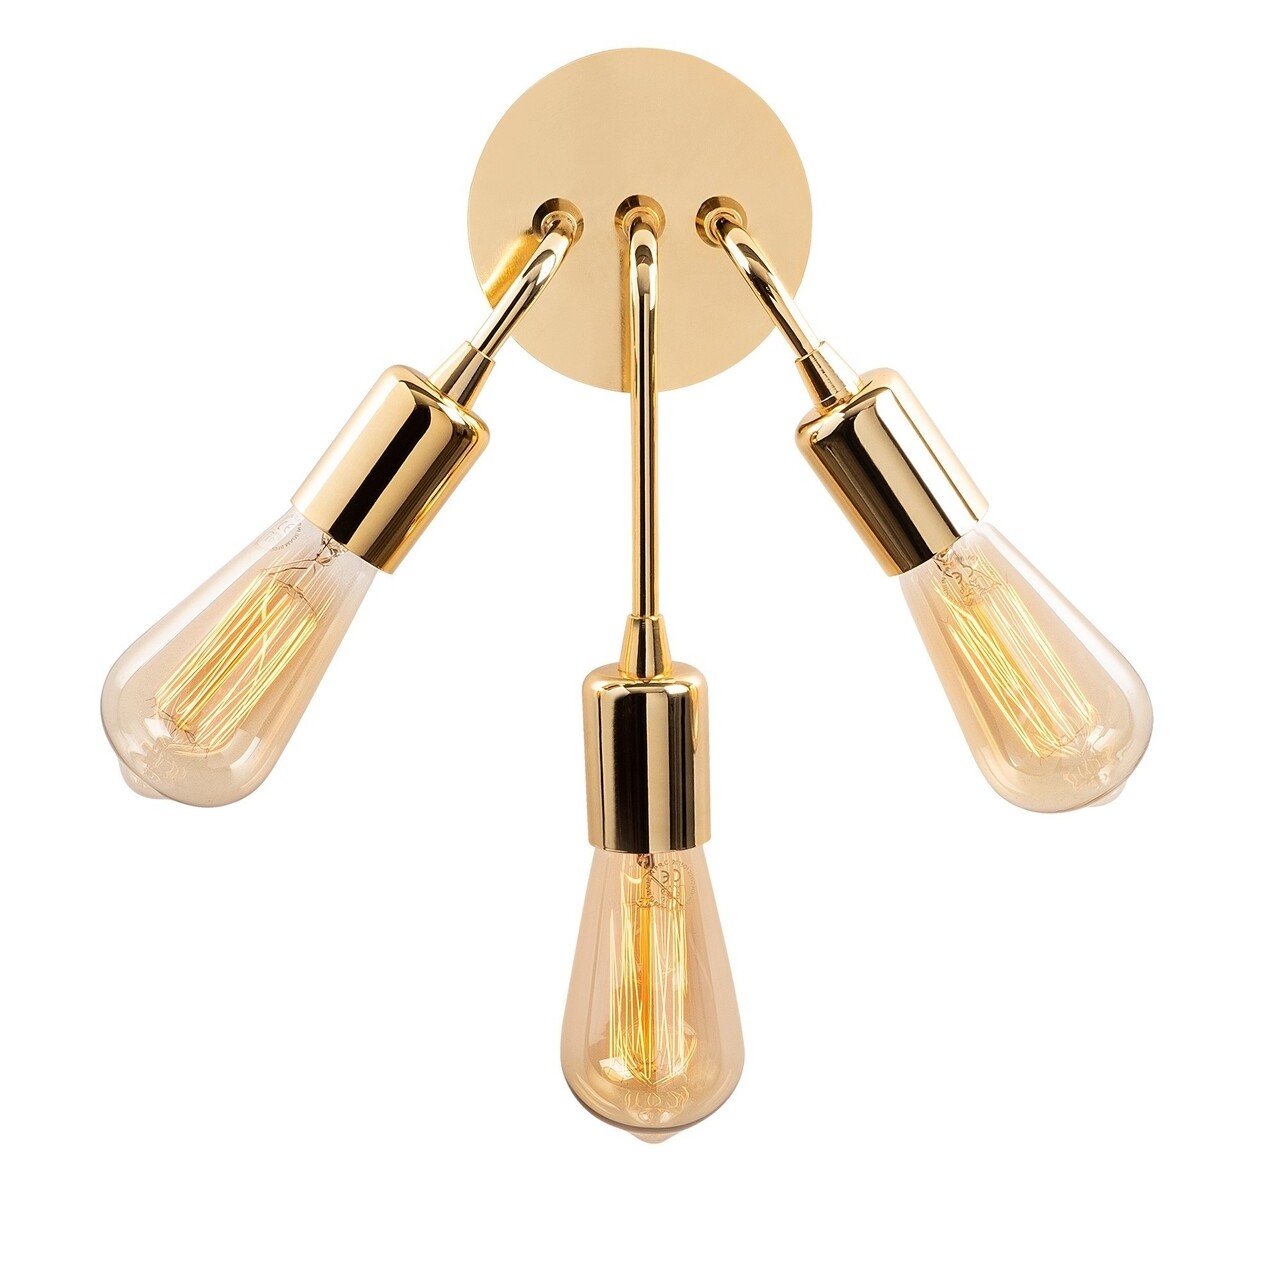 Harput N-1337 Fali lámpa, Noor, 22 x 28 cm, 3 x E27, 100W, aranyszín